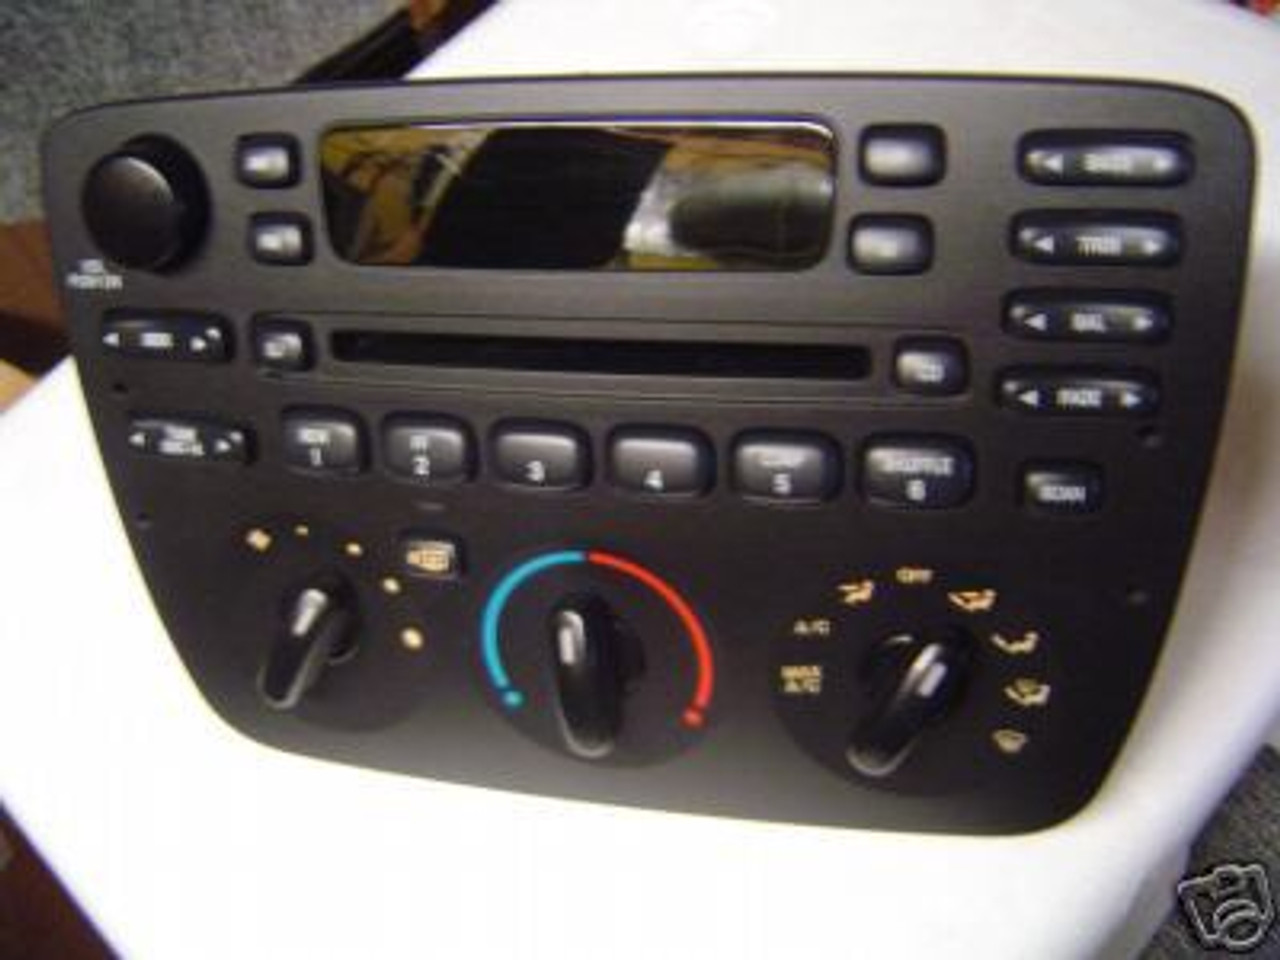 Ford Taurus 2005 2006 2007 AM FM CD Car Radio Fully Serviced with Warranty  (Renewed)